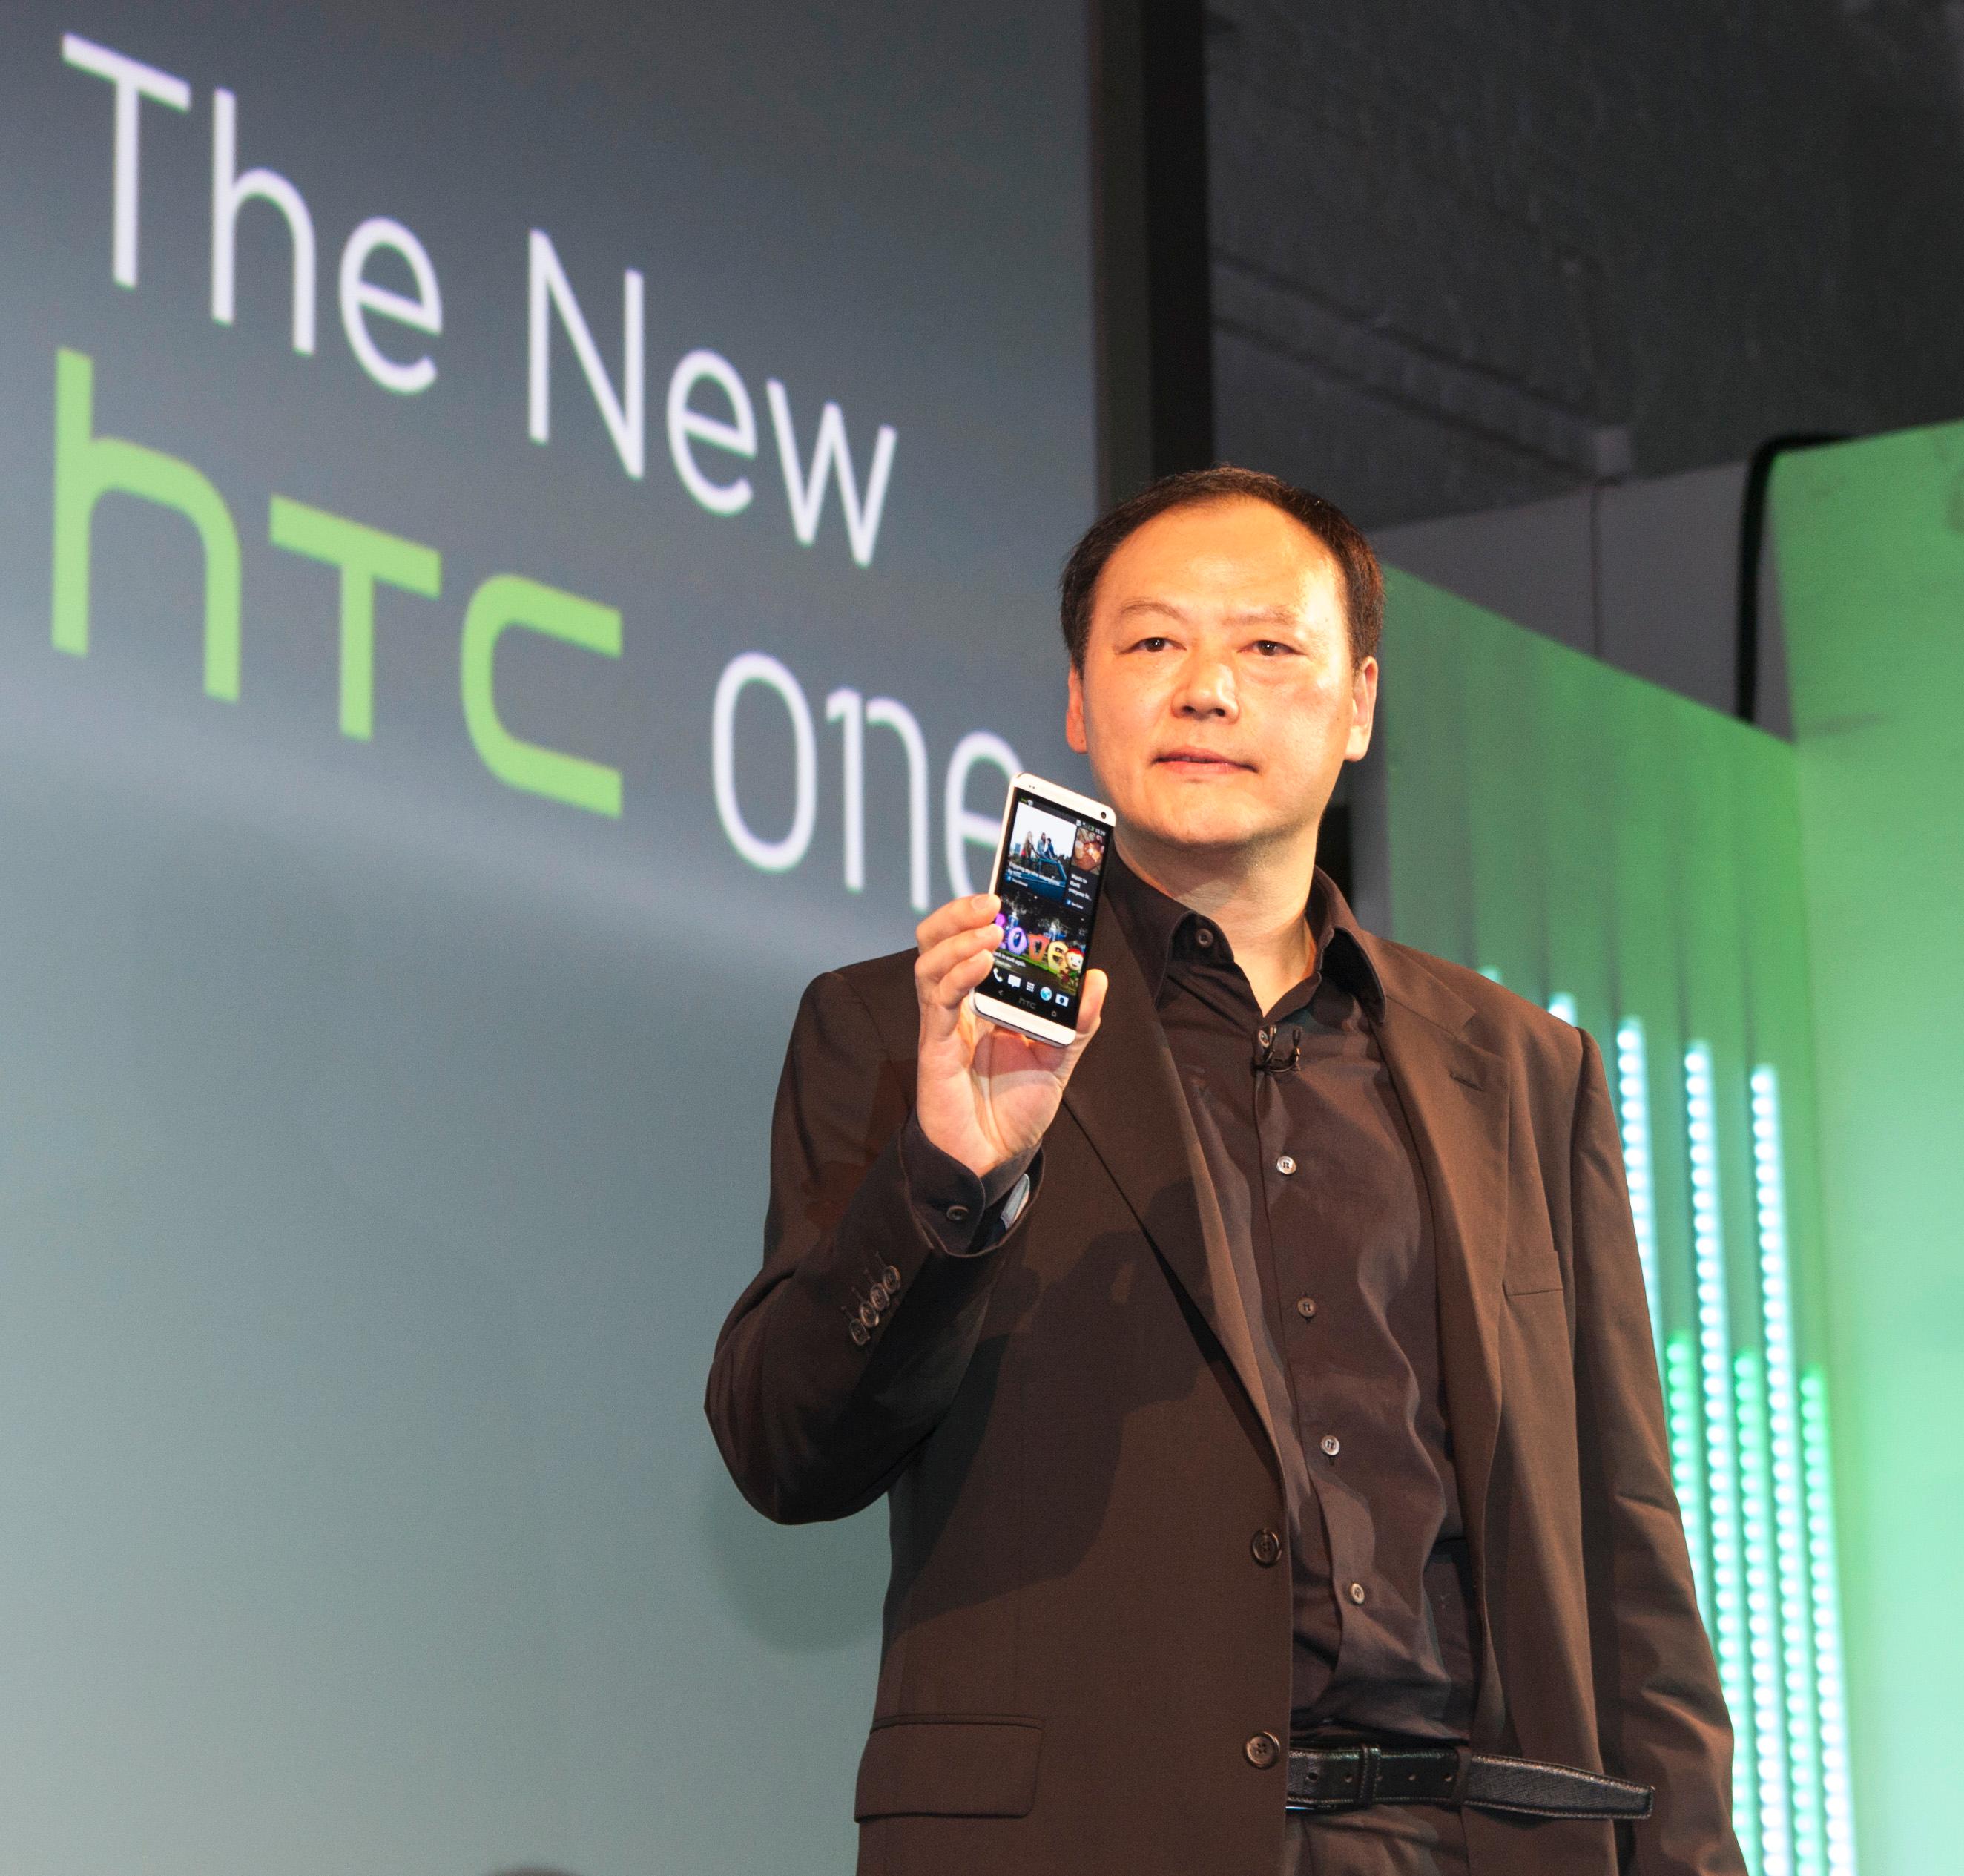 HTC-sjef Peter Chou viser frem One under lanseringen ved Kings Cross i London.Foto: Finn Jarle Kvalheim, Amobil.no